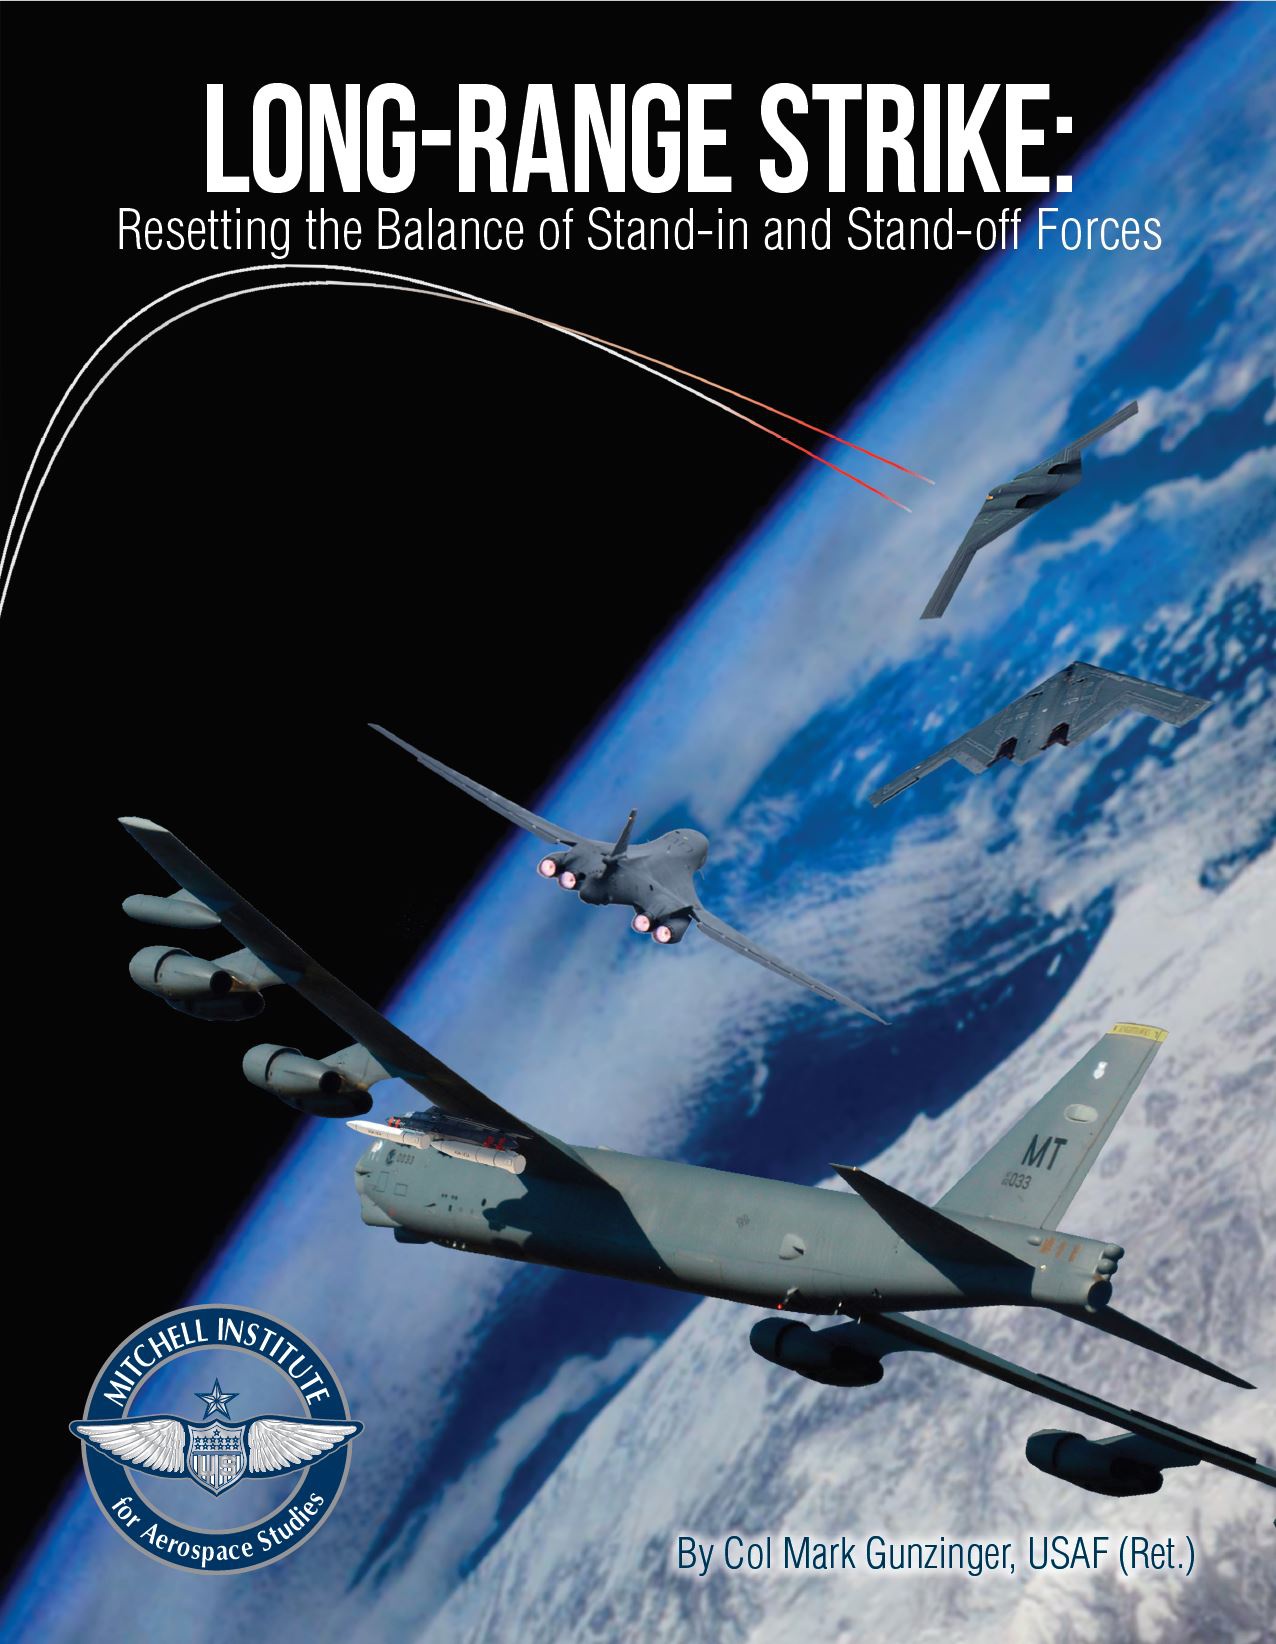 В июне 2020 года опубликовано очередное исследование, посвящённое развитию боевых операций стратегической авиации ВВС США - LONG-RANGE STRIKE: Resetting the Balance of Stand-in and Stand-off Forces.